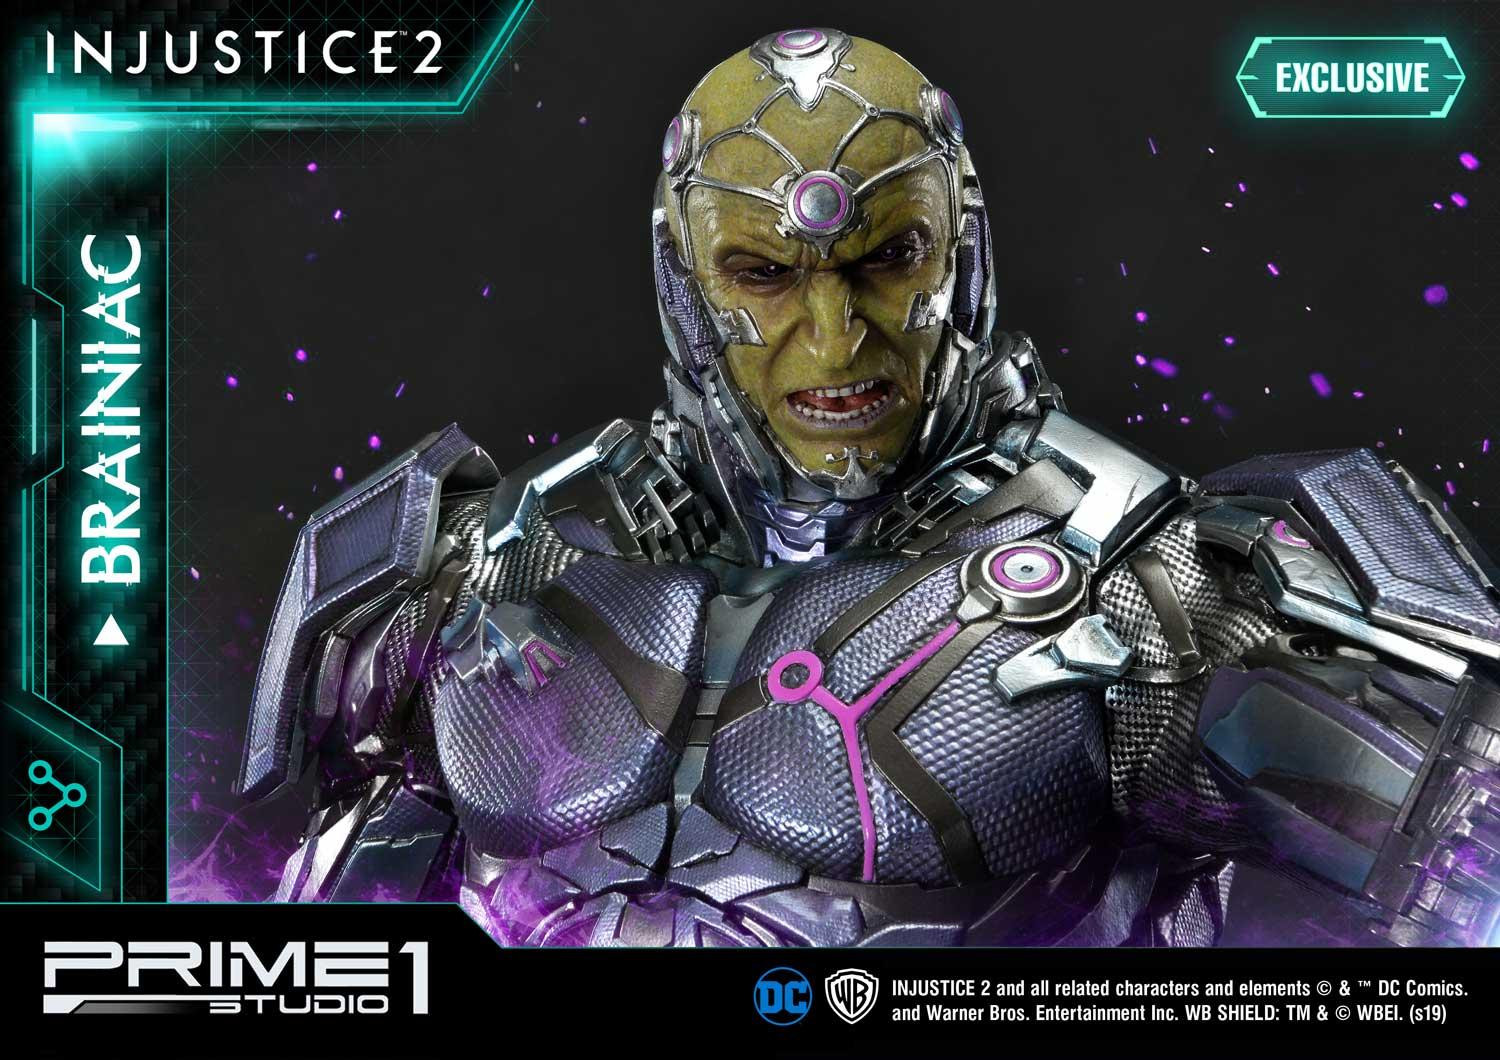 Prime 1 Studio's Injustice 2 Brainiac Statue